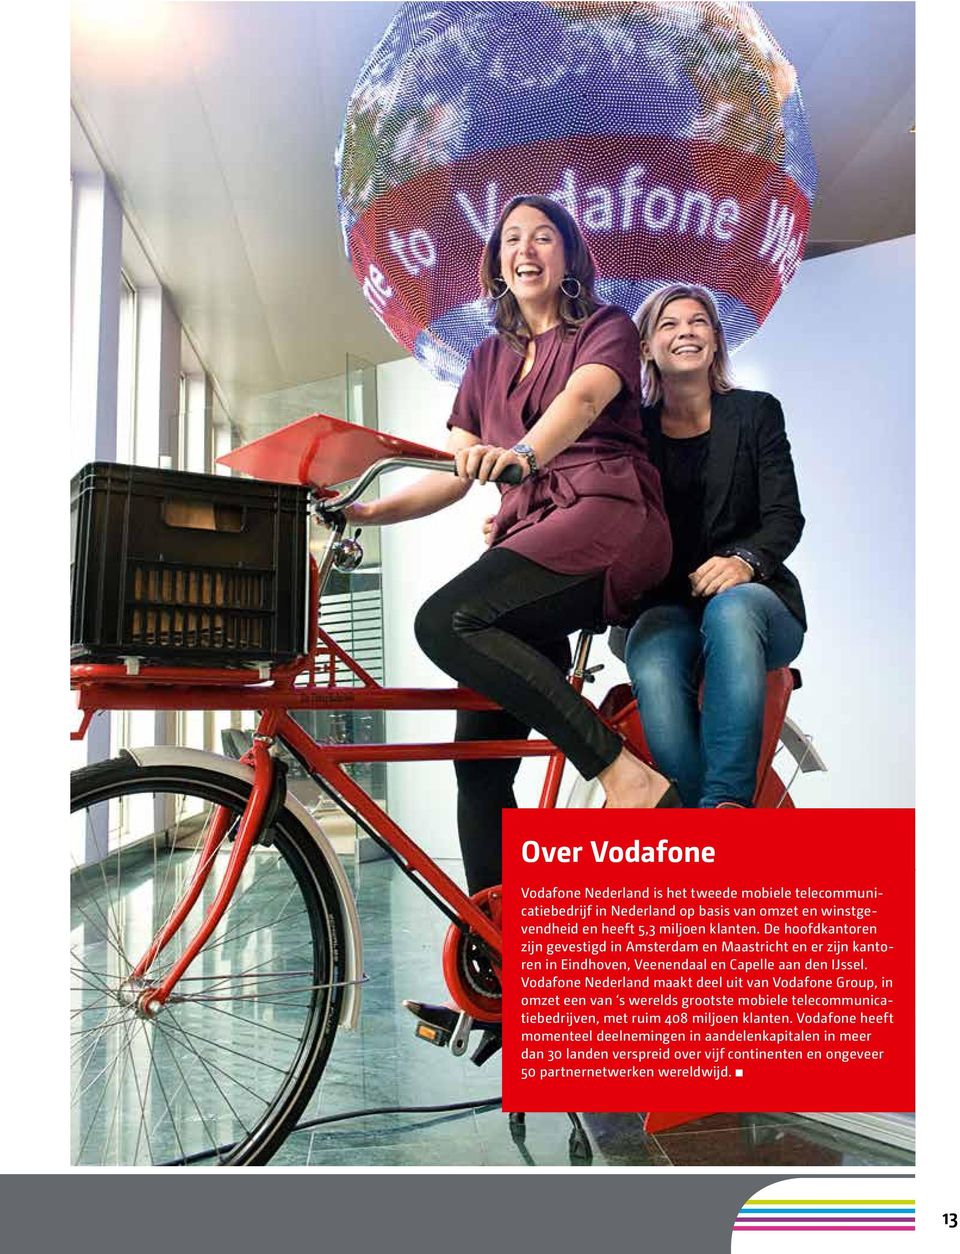 Vodafone Nederland maakt deel uit van Vodafone Group, in omzet een van s werelds grootste mobiele telecommunicatiebedrijven, met ruim 408 miljoen